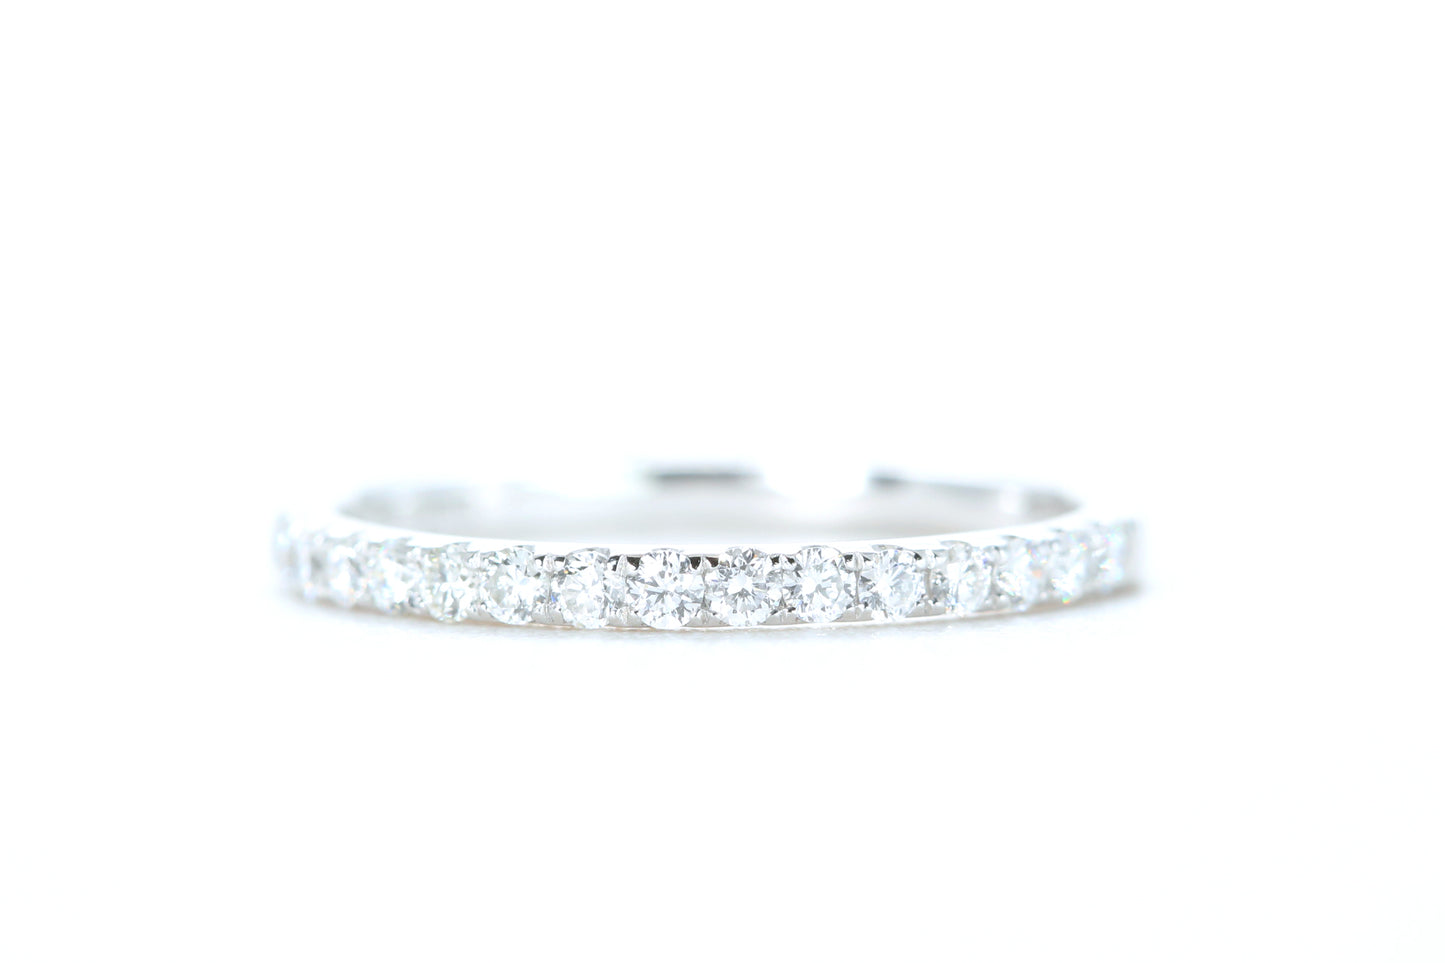 Micro Pavé Diamond Ring 1/3 Carat in Platinum